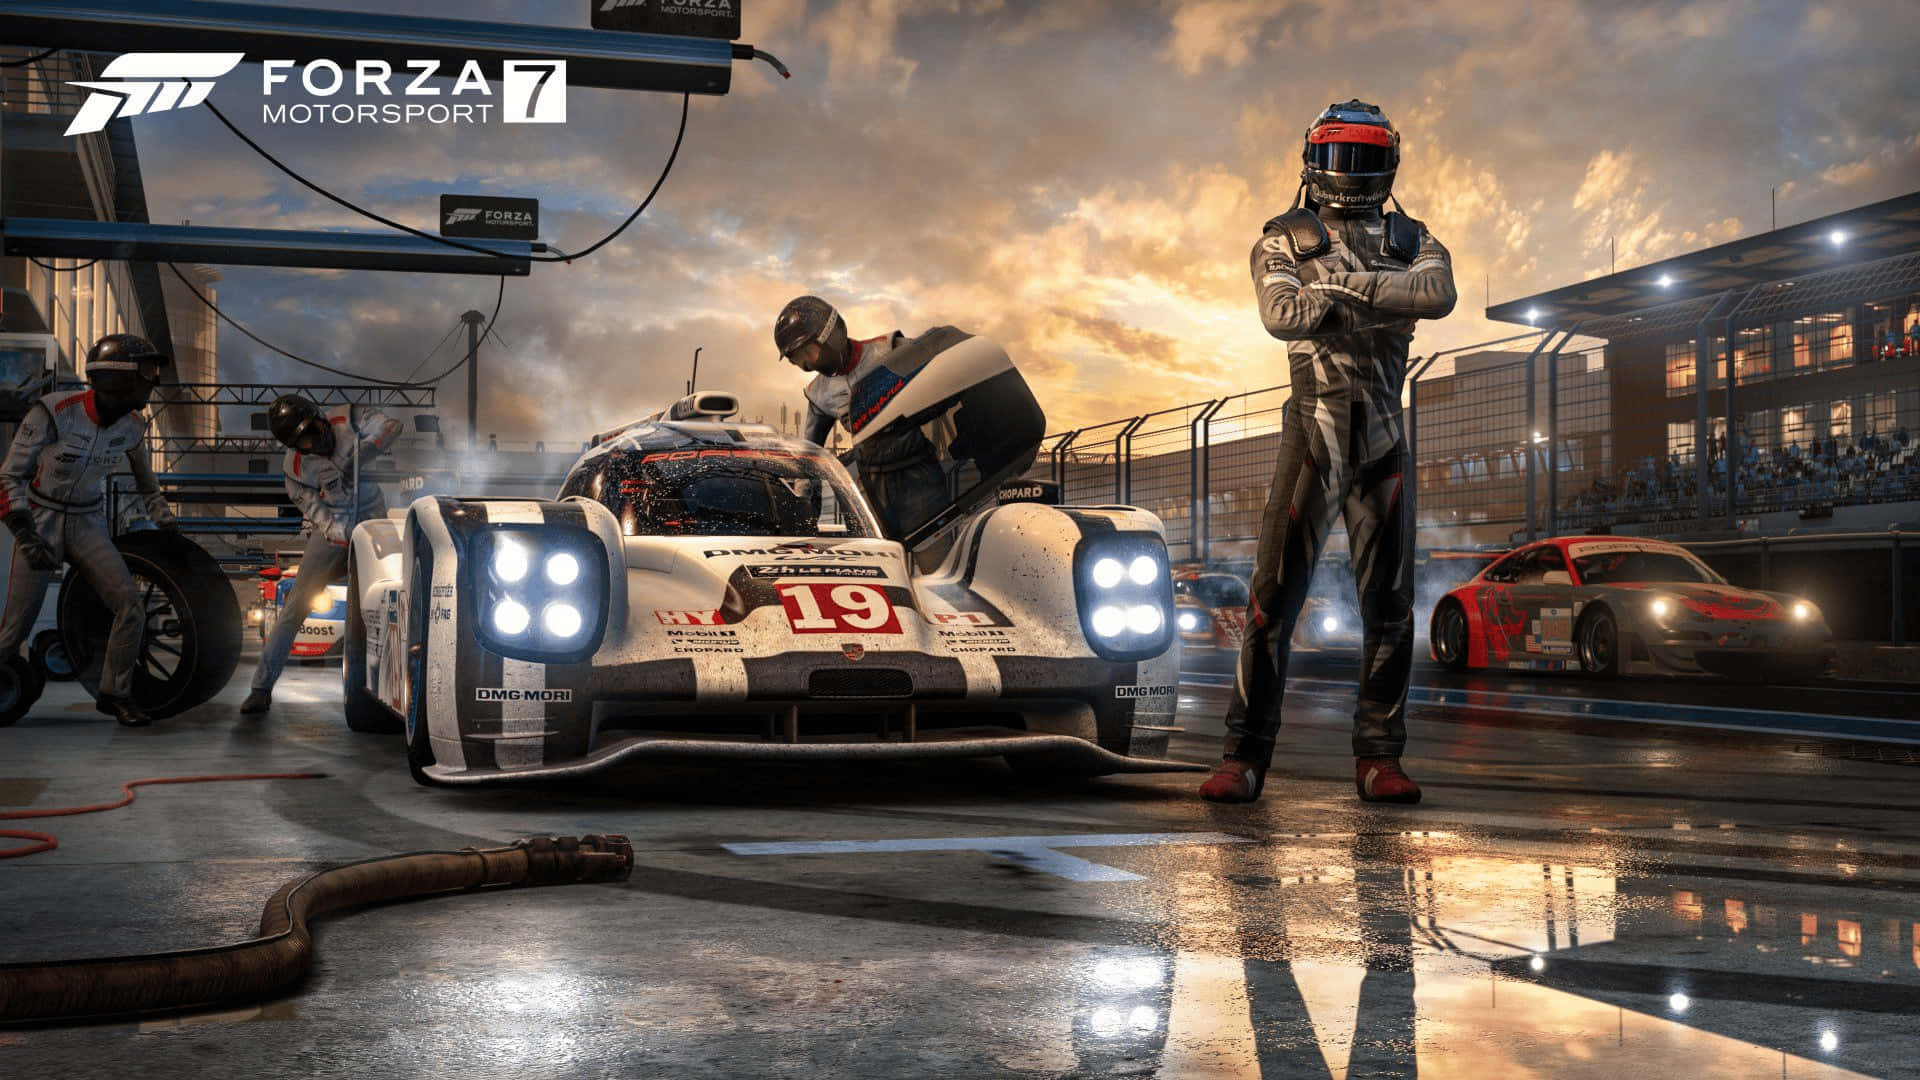 Disfrutade La Emocionante Experiencia De Forza Motorsport 7 En 1080p.